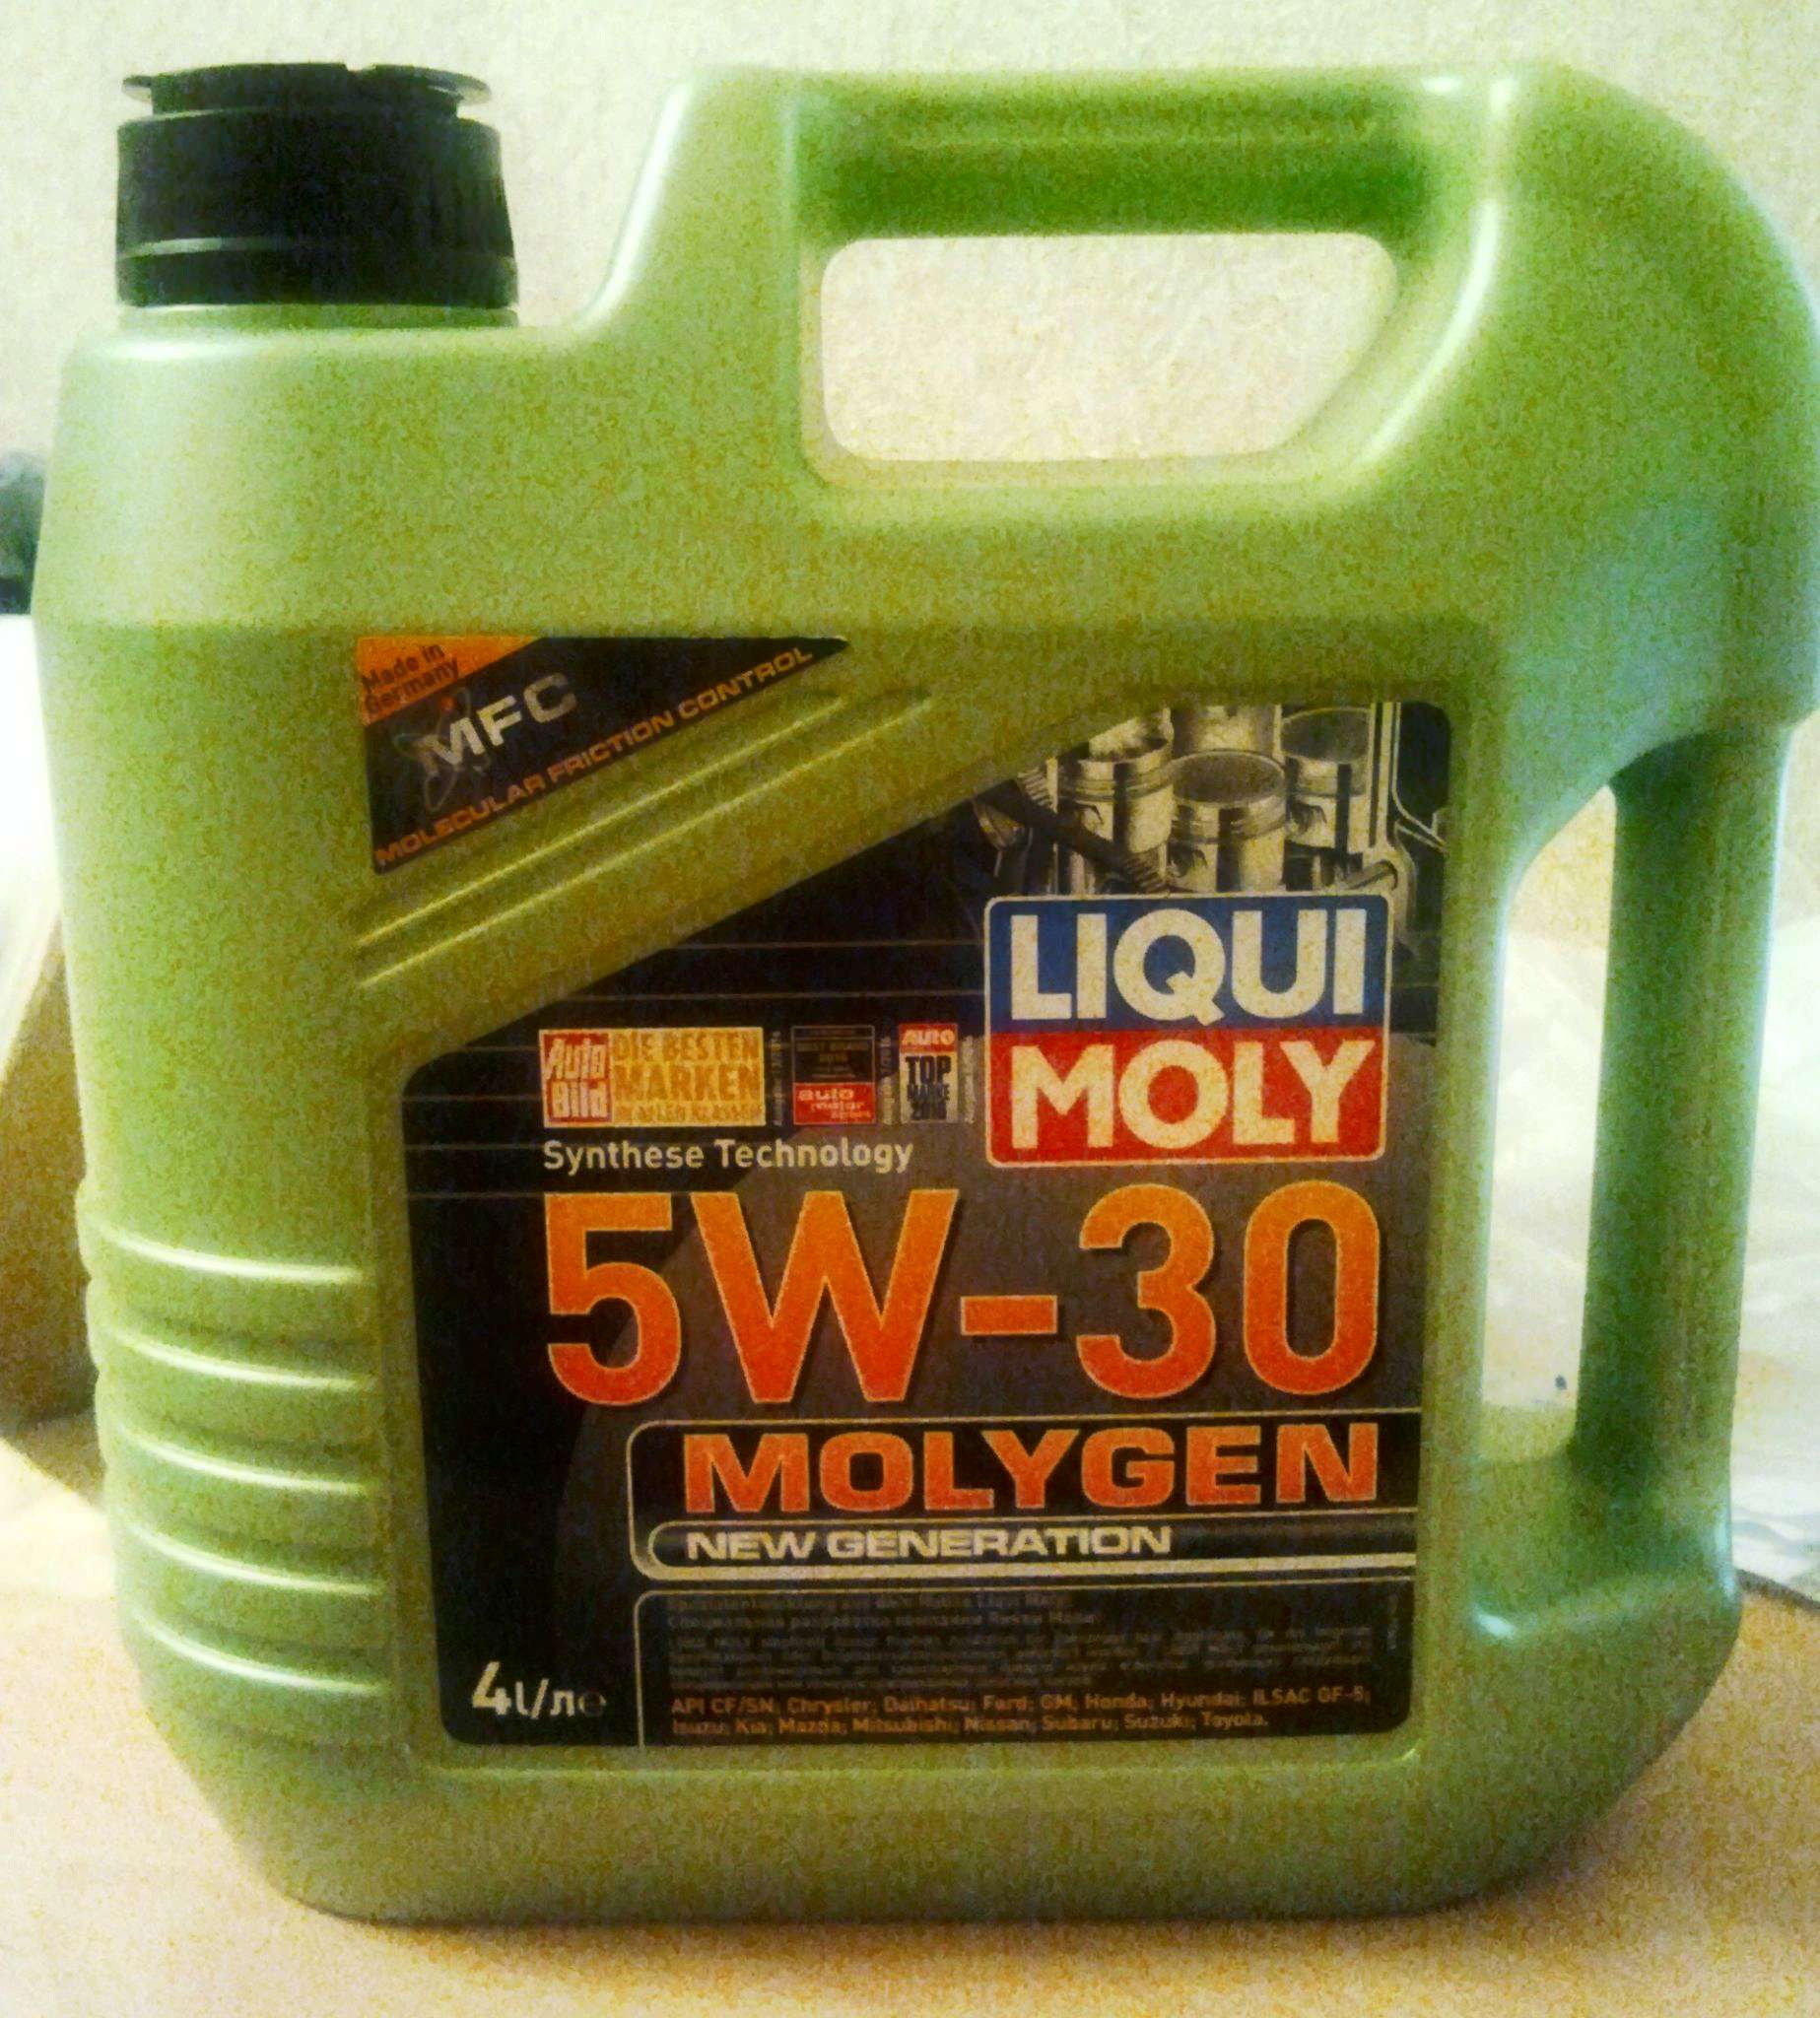 Ликви моли молиген 5w30 купить. Molygen New Generation 5w-30. Ликви моли 5w30. Моторное масло Ликви моли молиген 5w30. Liqui Moly Molygen 5w-30 4 л.